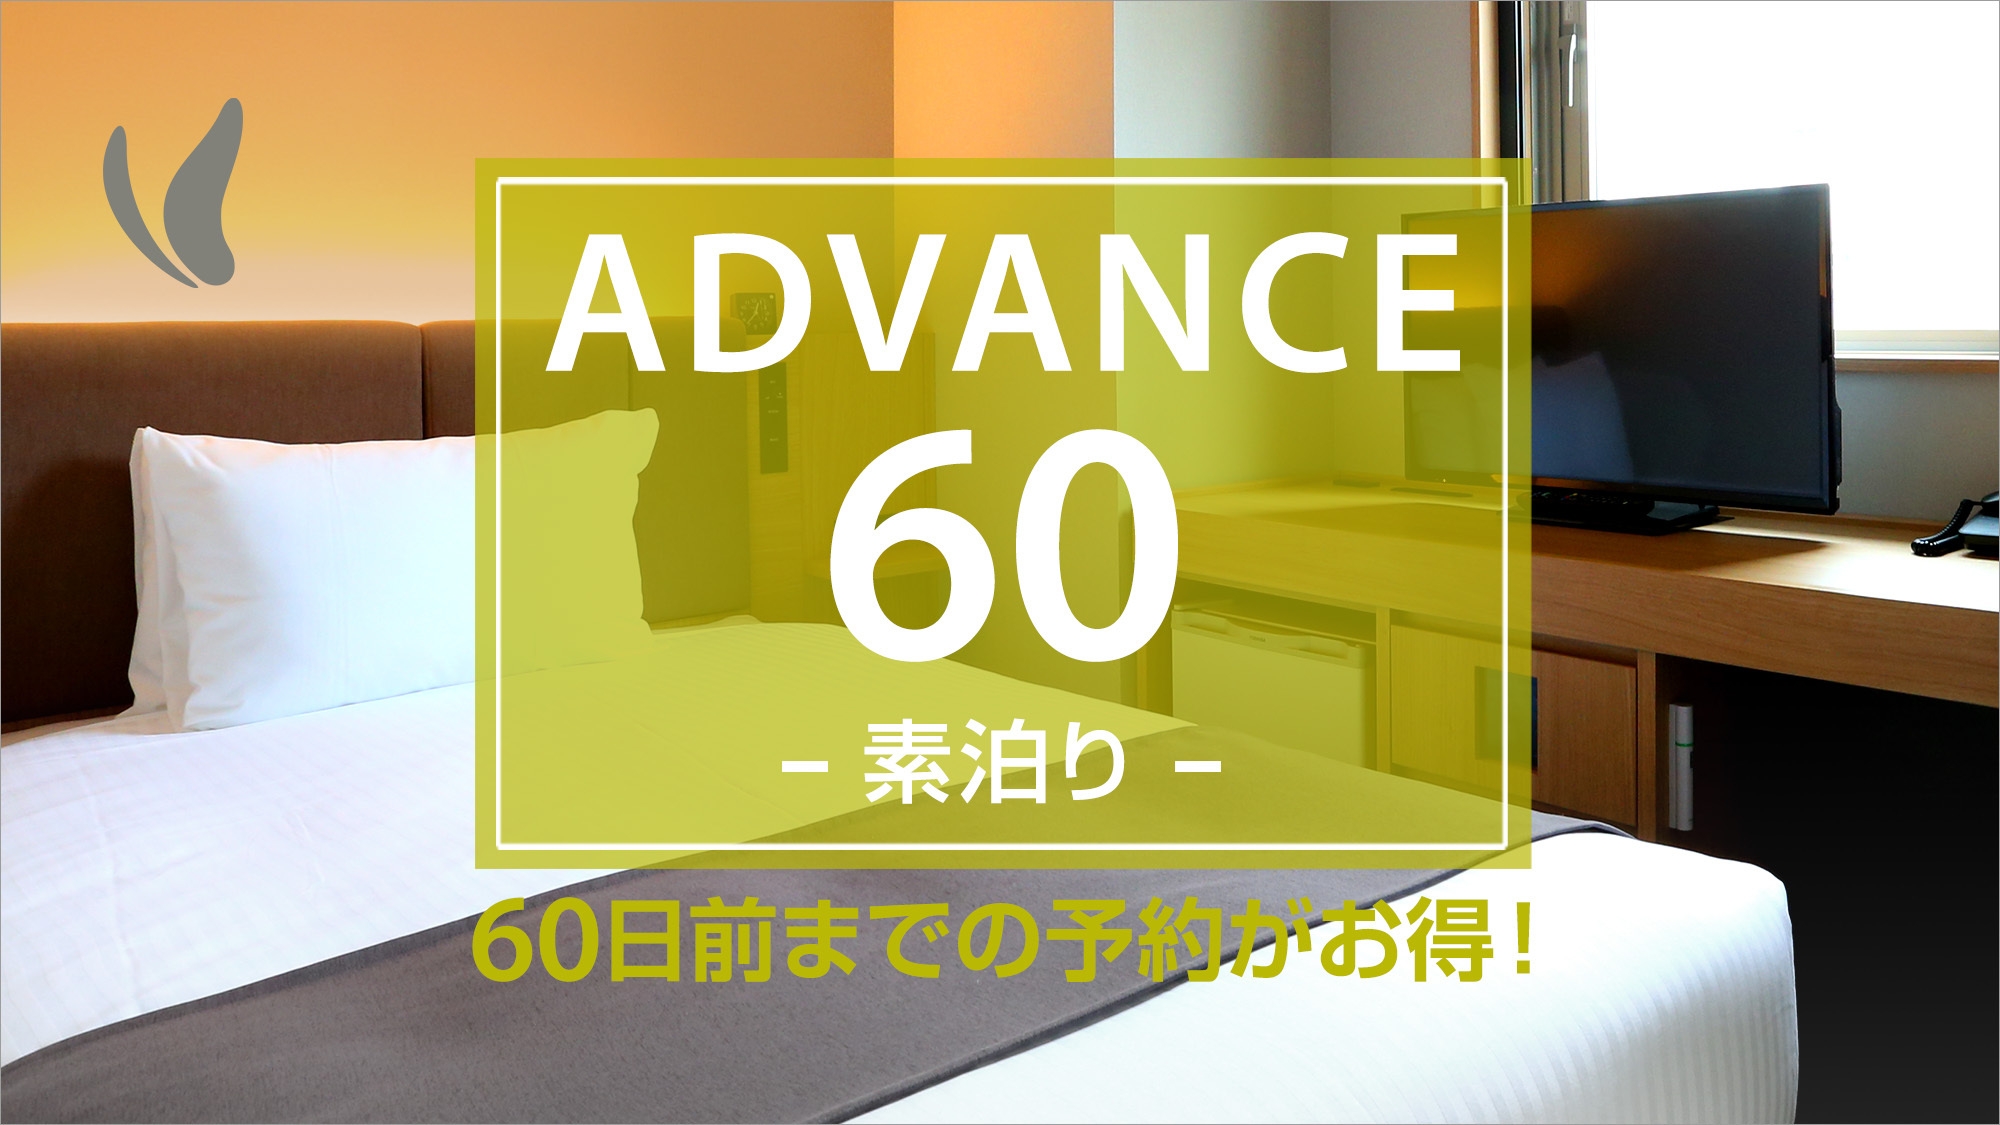 【ADVANCE60】【さき楽】60日前までの予約プラン